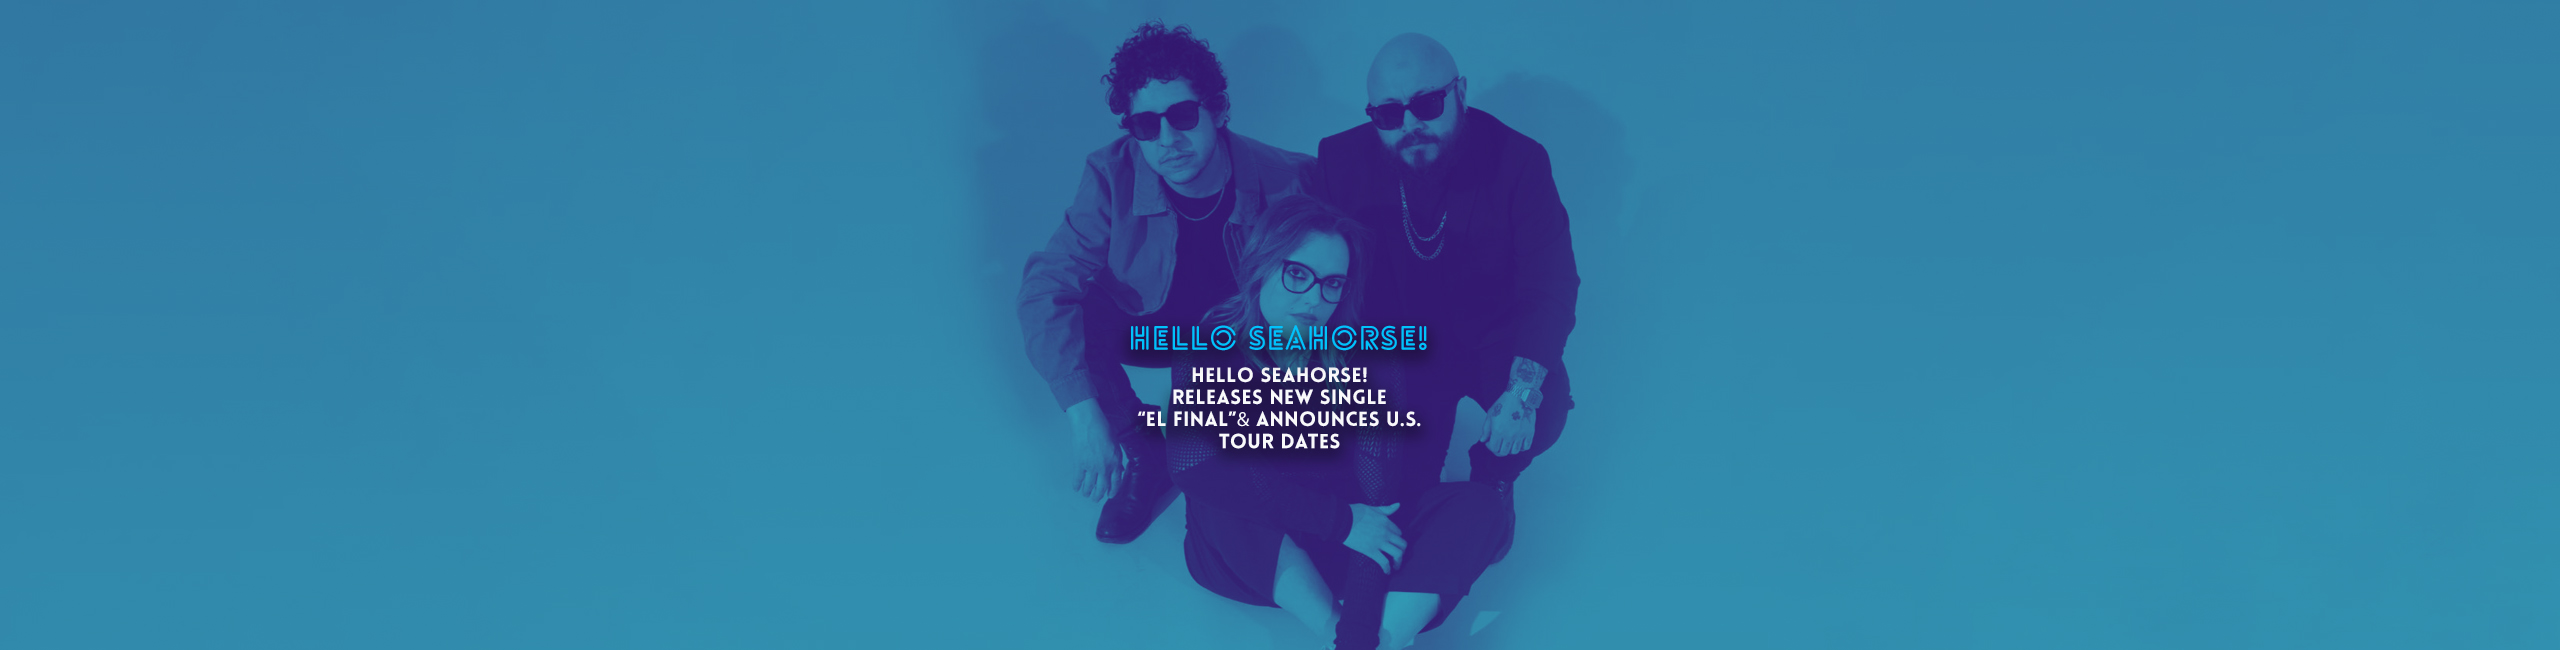 HELLO SEAHORSE! Releases new single “el final” & announces U.S. Tour dates